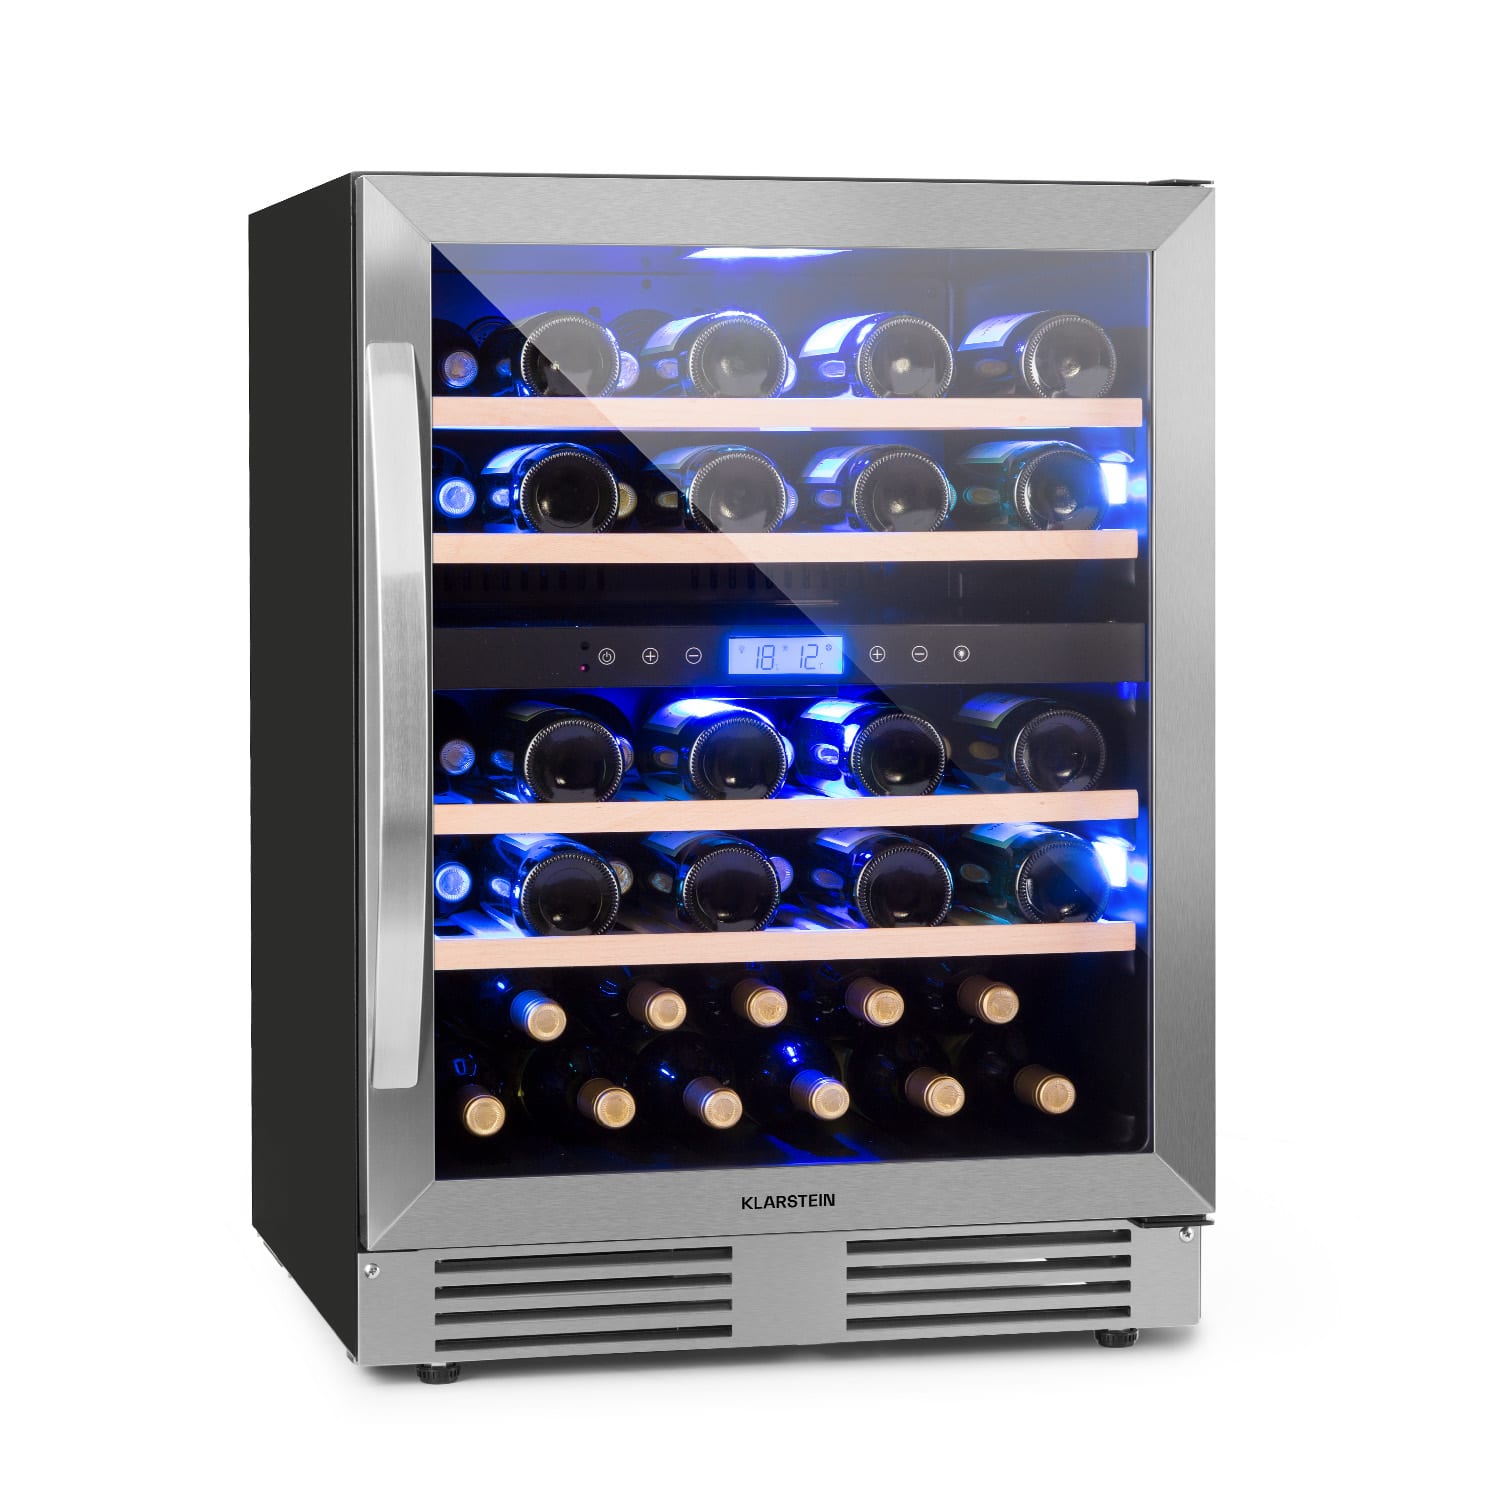 Klarstein Vinovilla Duo 43, 2 zónás borhűtő, 129 liter, 43 palack, 3 színű LED világítás, üvegajtó